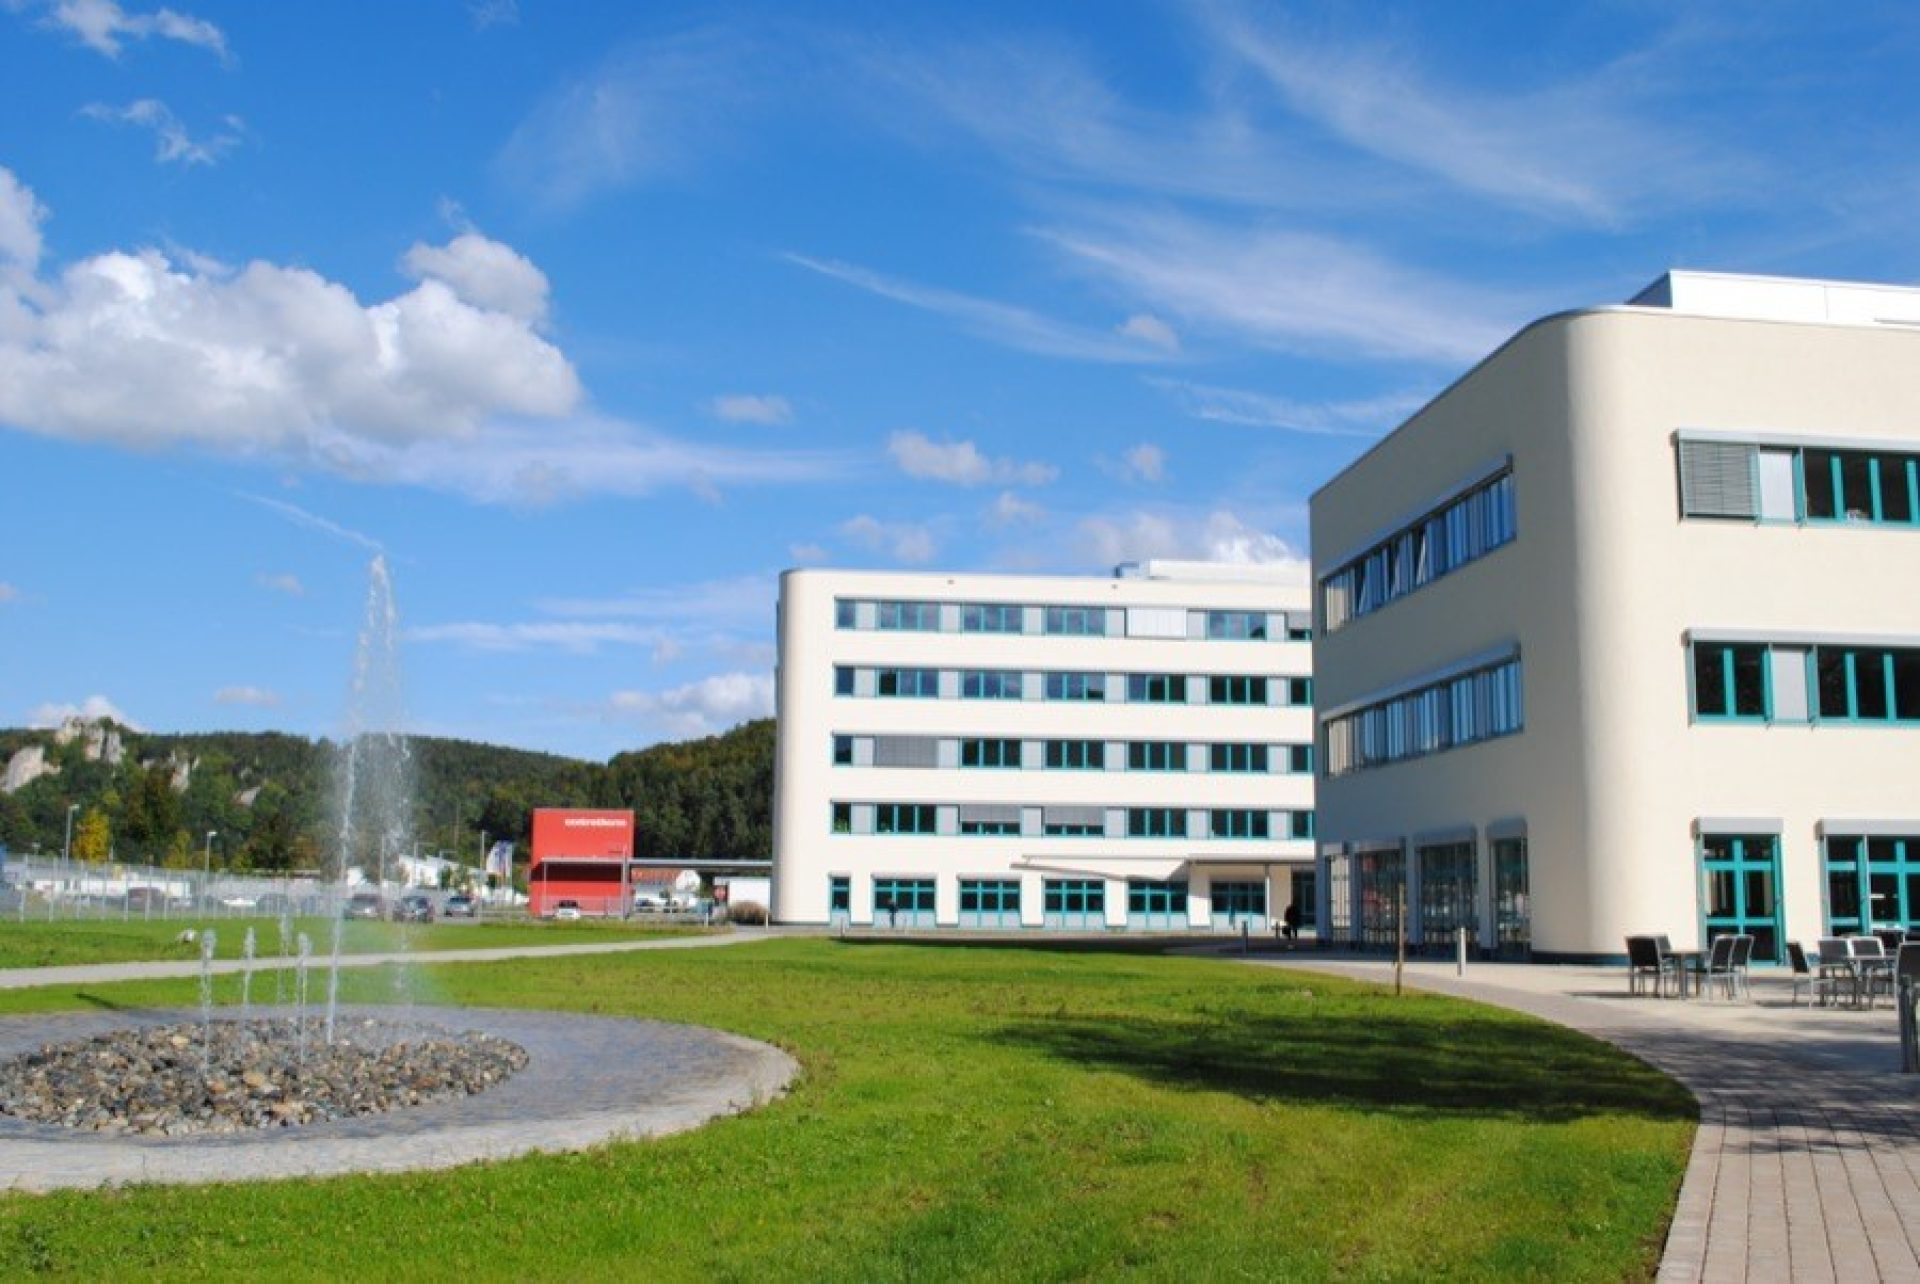 Centrotherm Fabrikerweiterung – Büro- und Produktionskomplex PV-Industrie1177